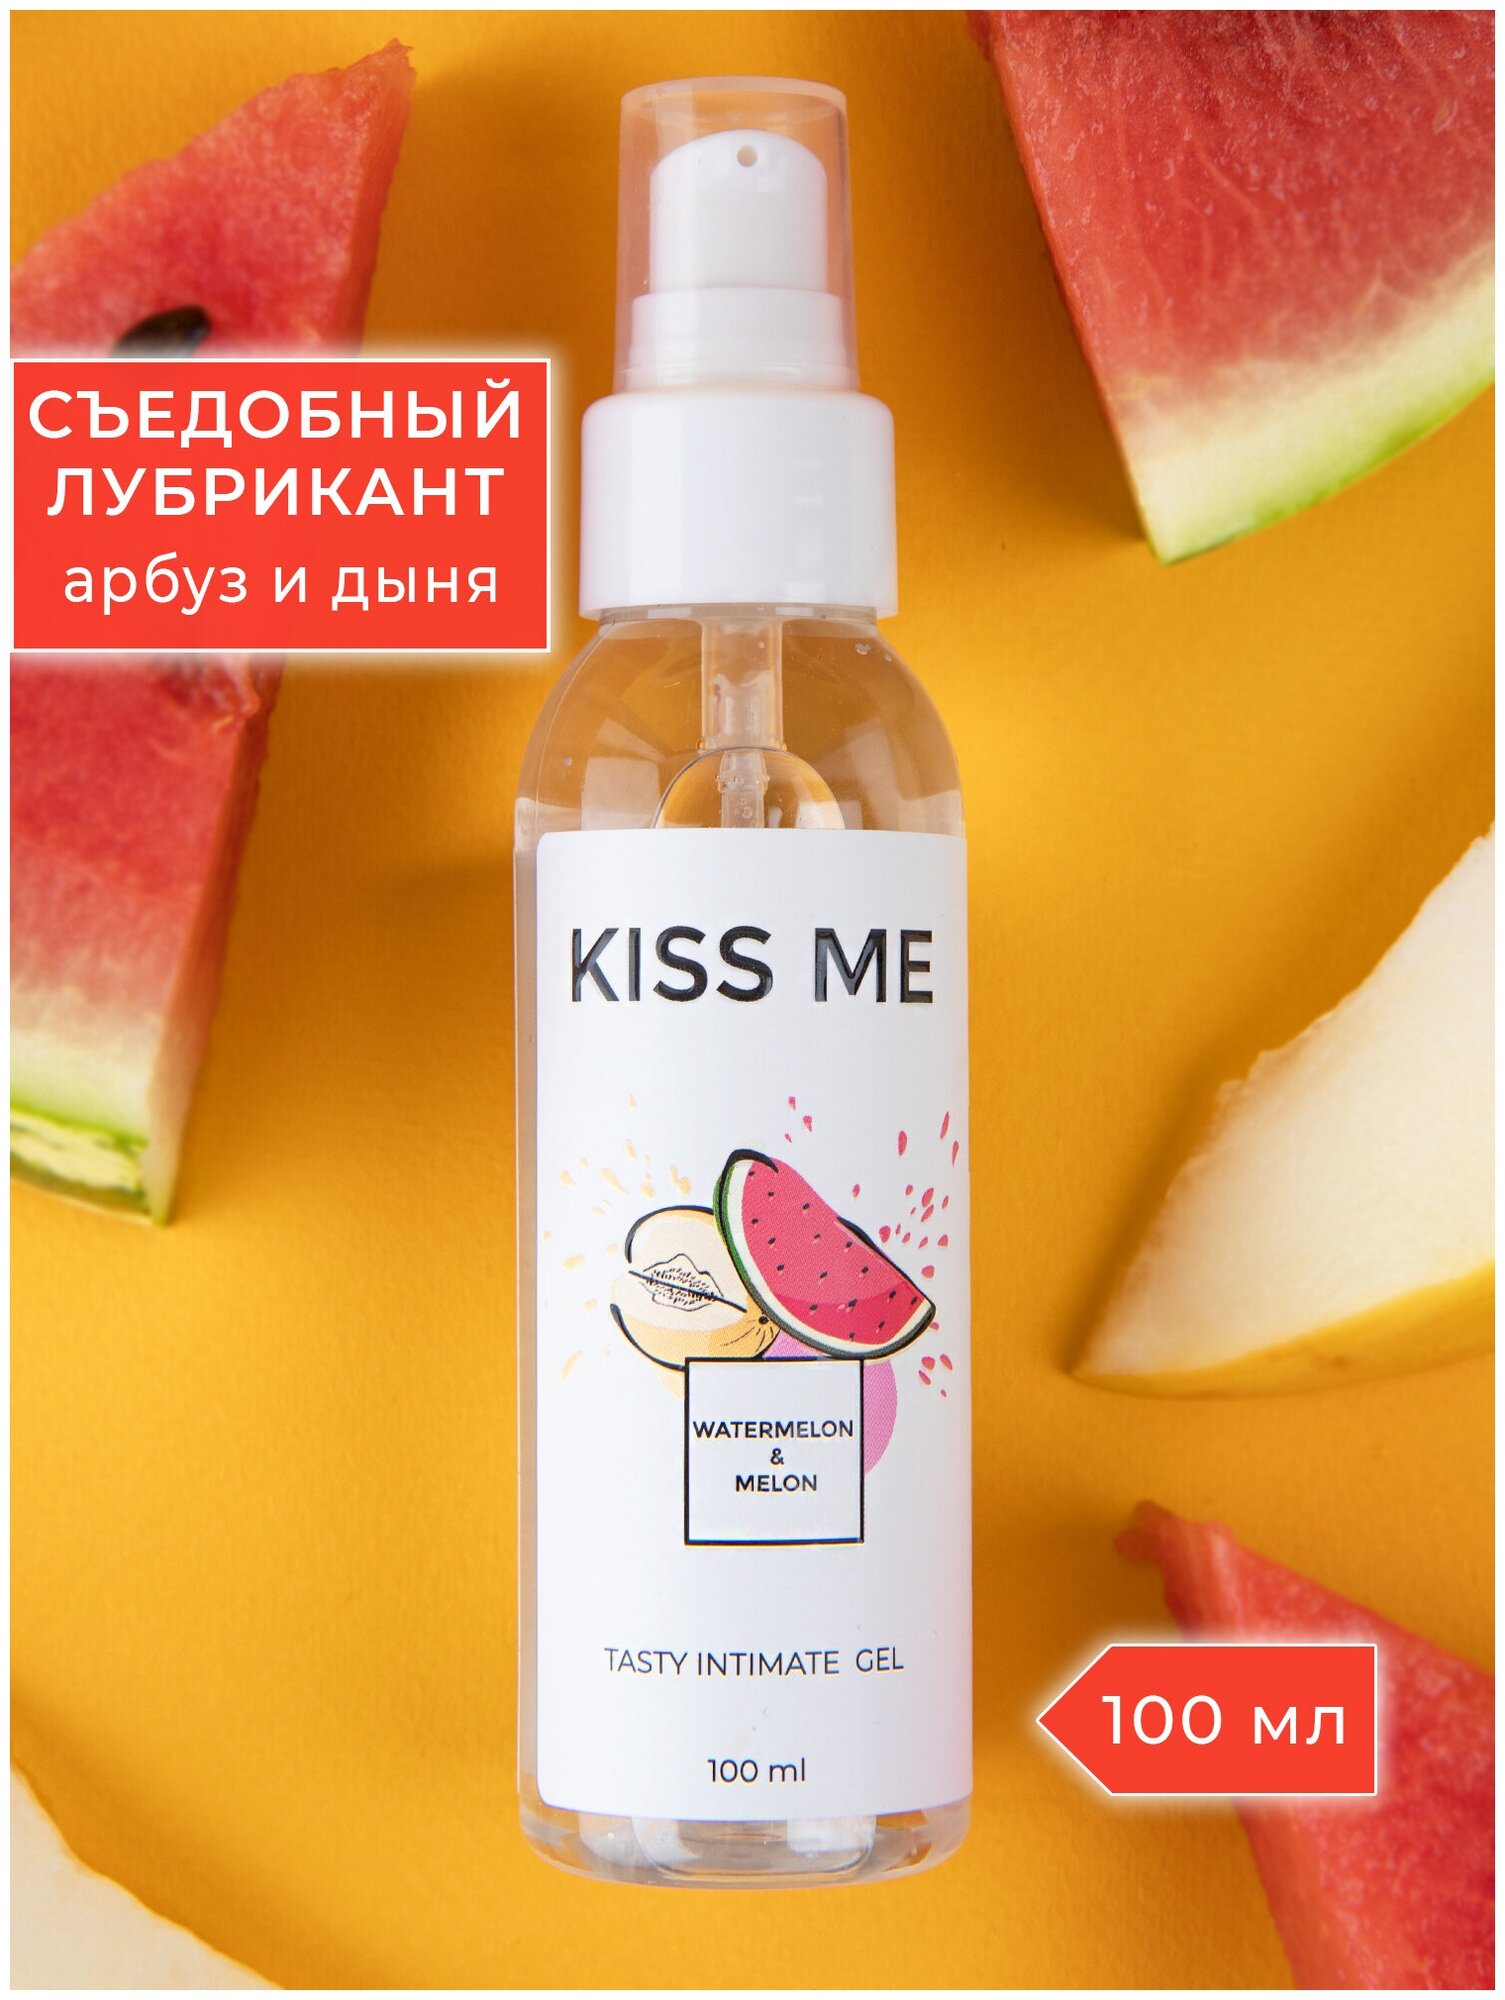 Гель-смазка Smaska Съедобный лубрикант на водной основе "Kiss me" со вкусом арбуз - дыня 100 мл